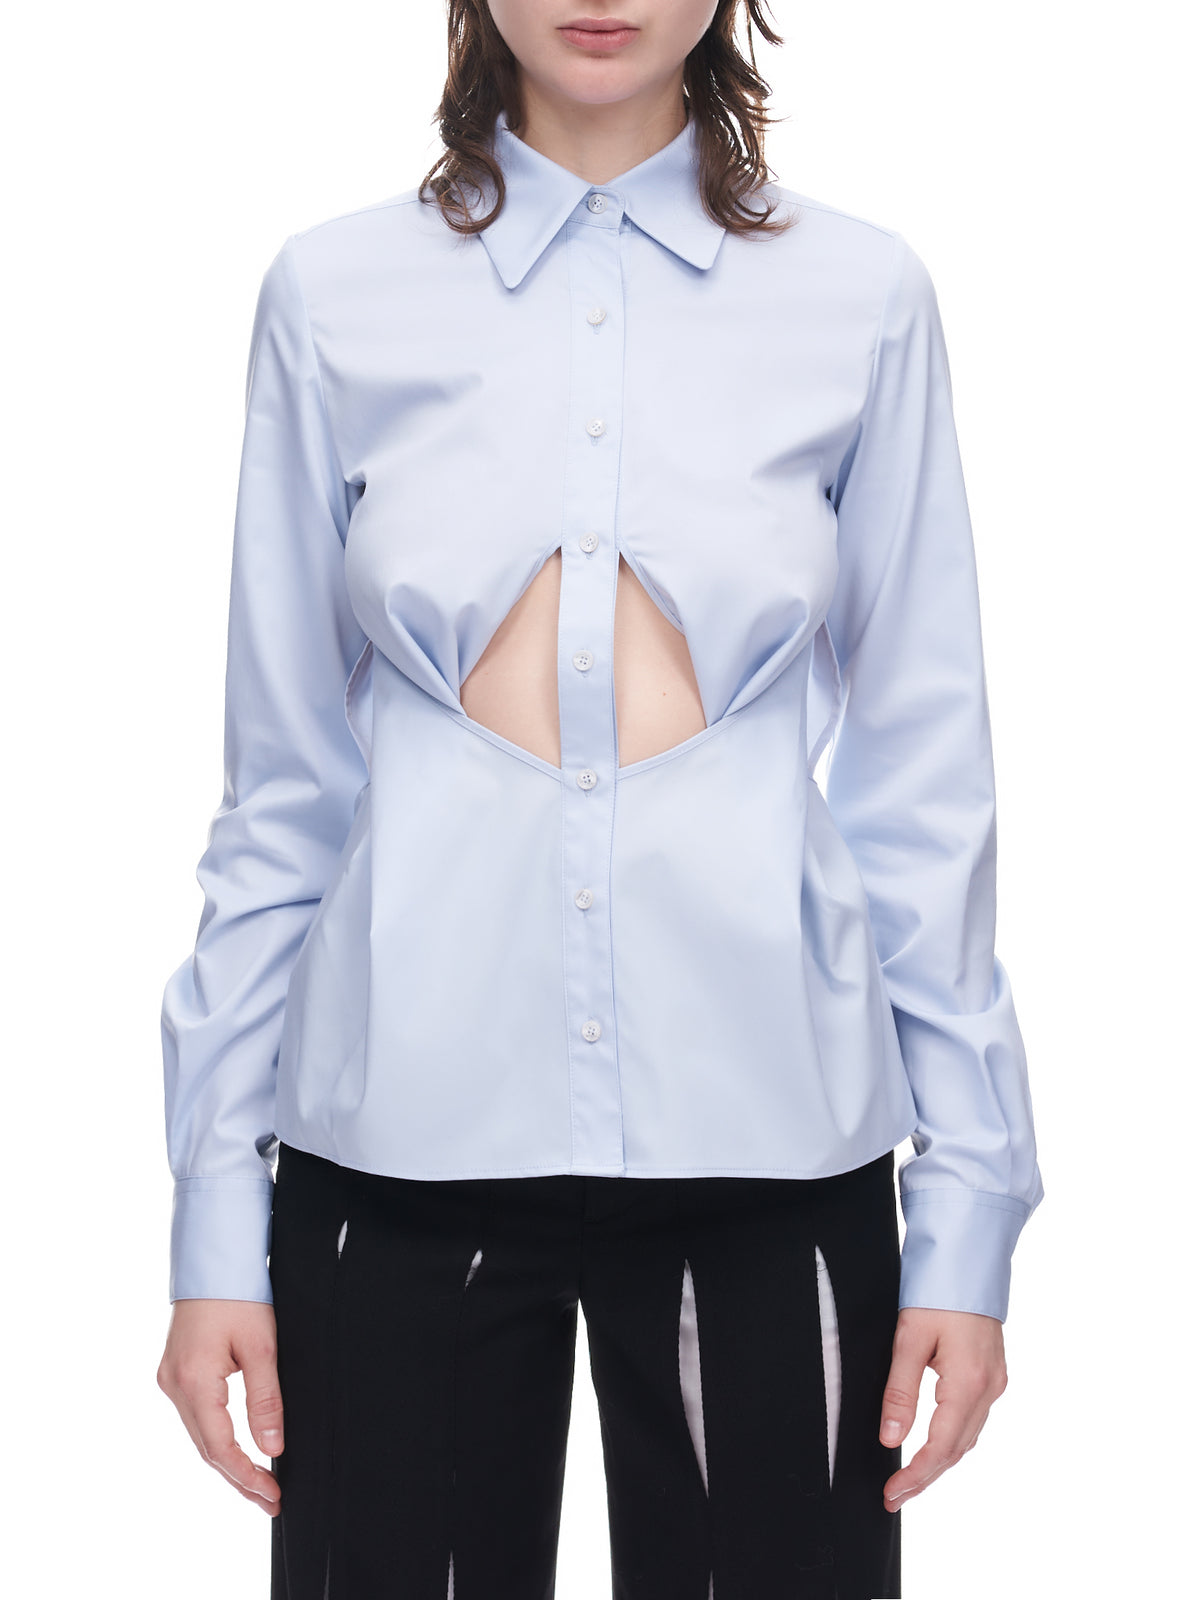 Underbust Cutout Button Up Shirt (SH01-SKYBLUE)